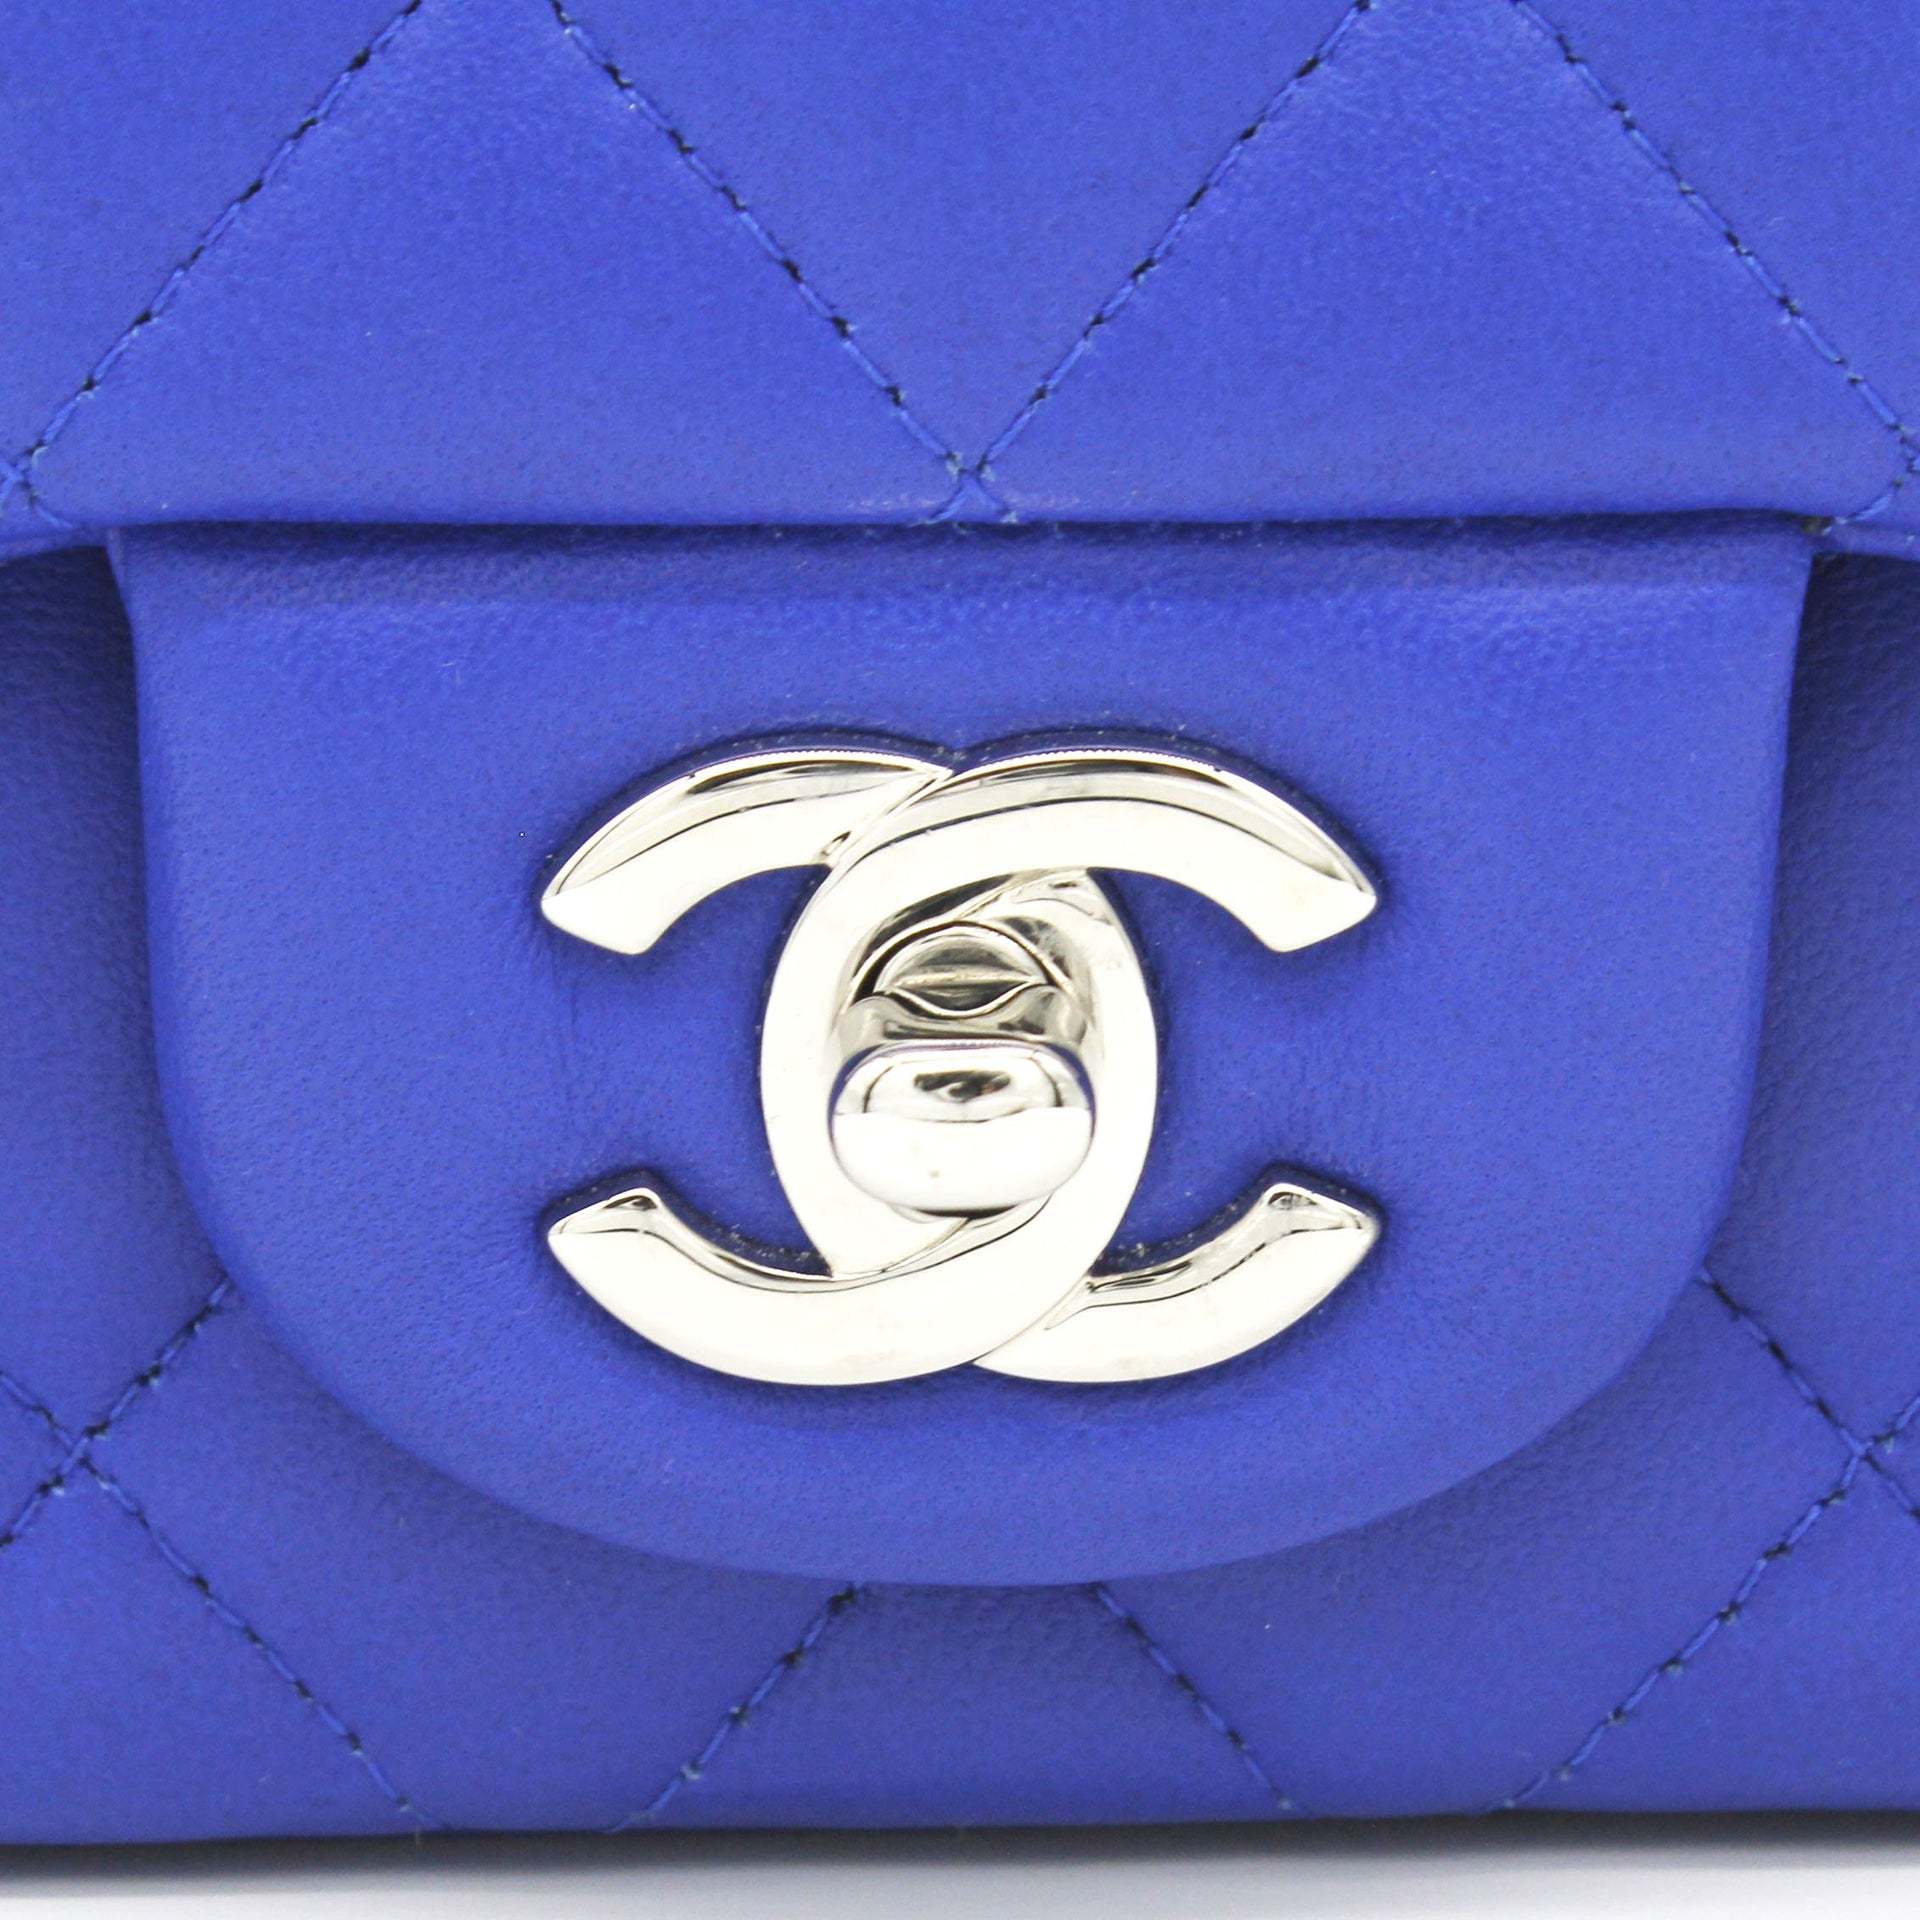 Chanel Mini Square Flap Bag Blue Lambskin Light Gold Hardware